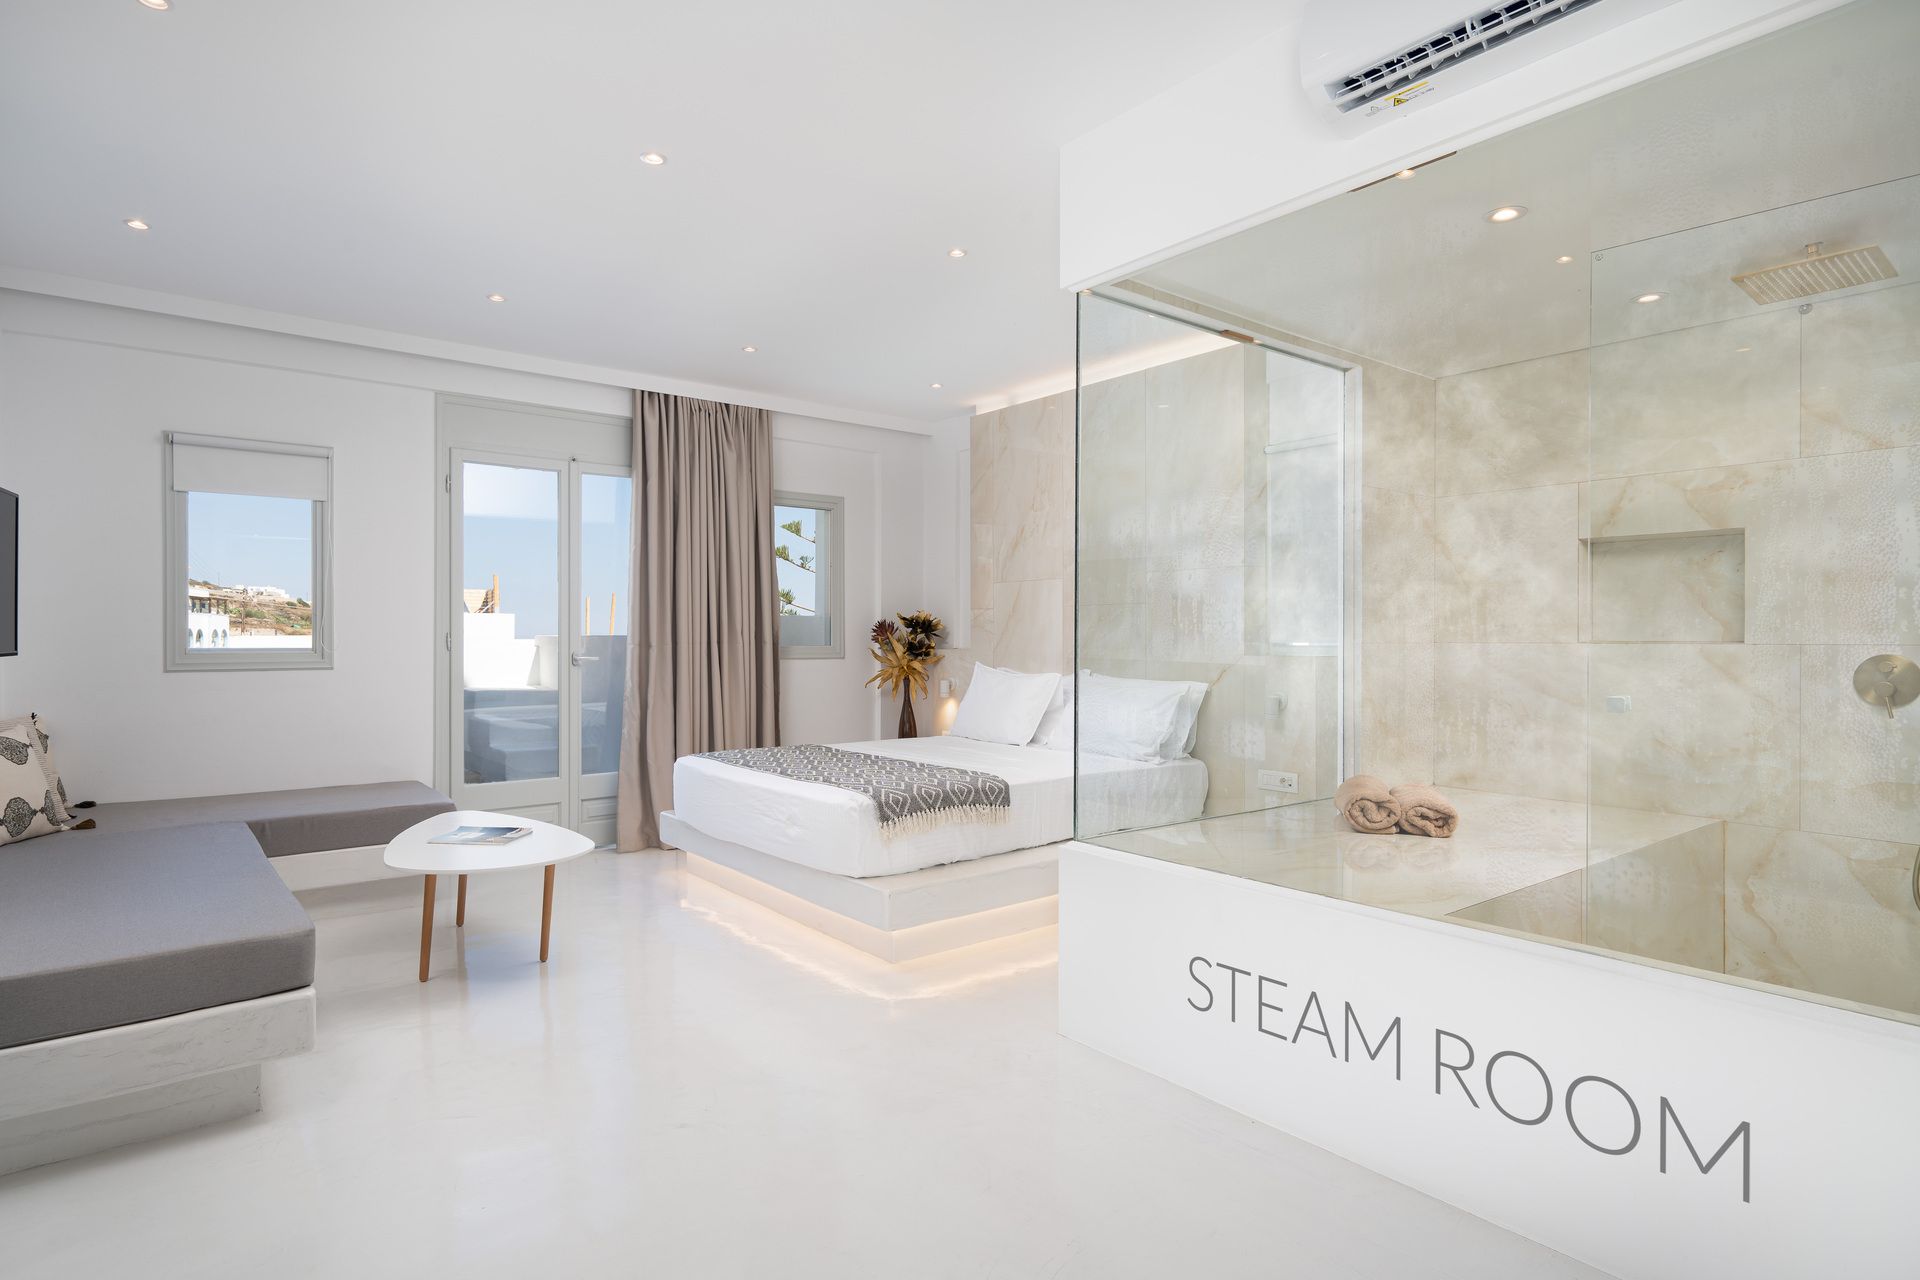 A2 steam room